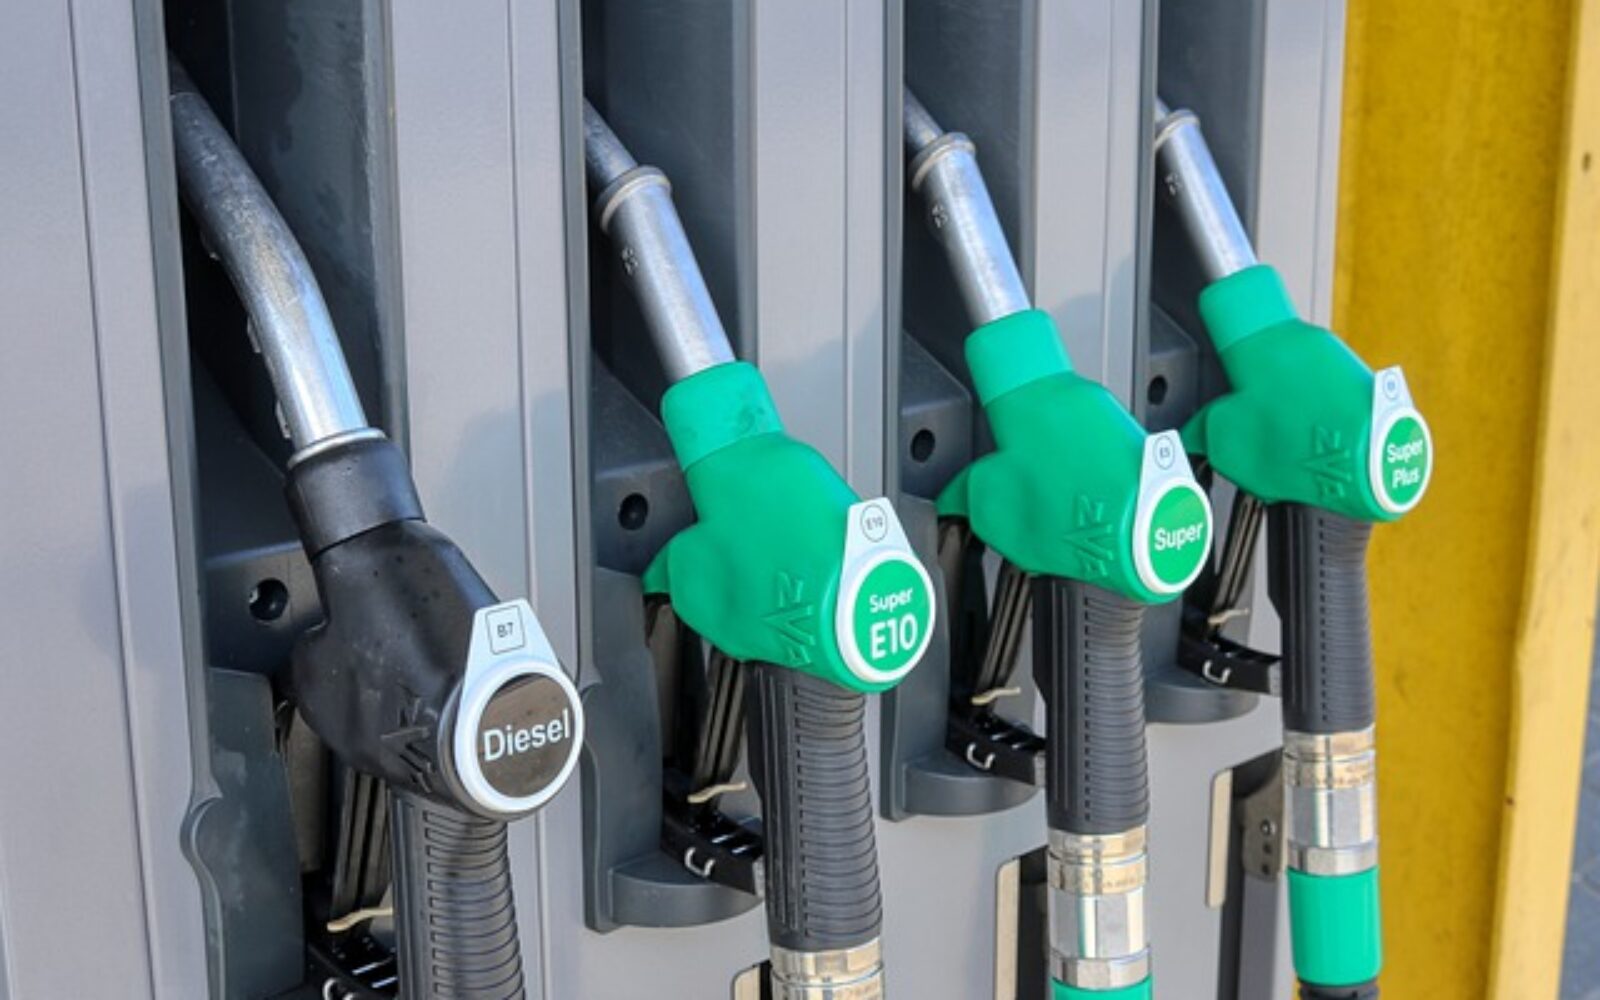 Prezzi della benzina alle stelle, al self service superata quota 2,018 euro al litro. Vola anche il diesel